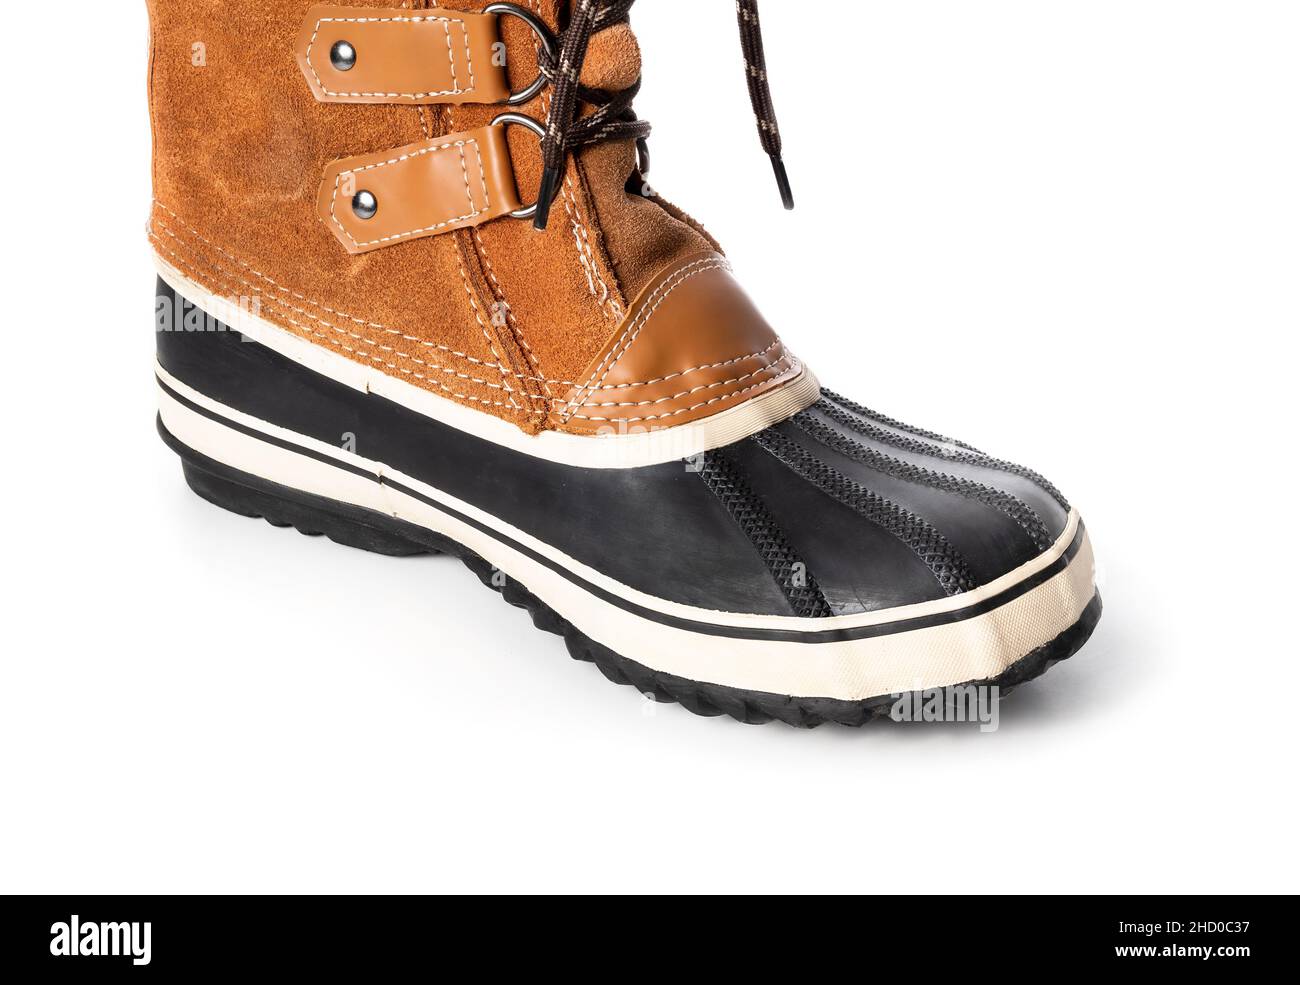 PAC Stiefel oder Schneestiefel mit Gummiunterschale, wasserfestem Leder und Schuhspitze. Perspektivische Ansicht. Warme hellbraune und schwarze Winterschuhe mit Stockfoto